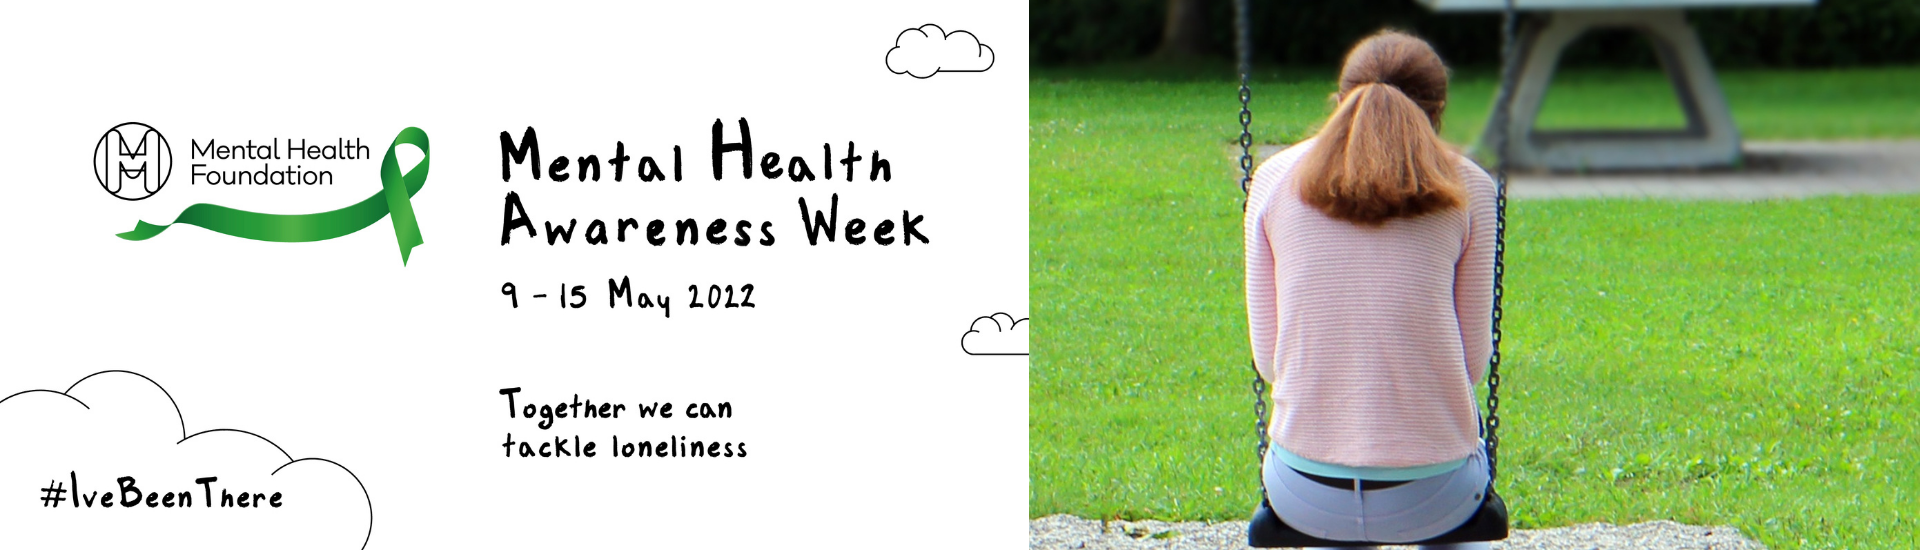 <h1>Mental Health Awareness Week</h1>
